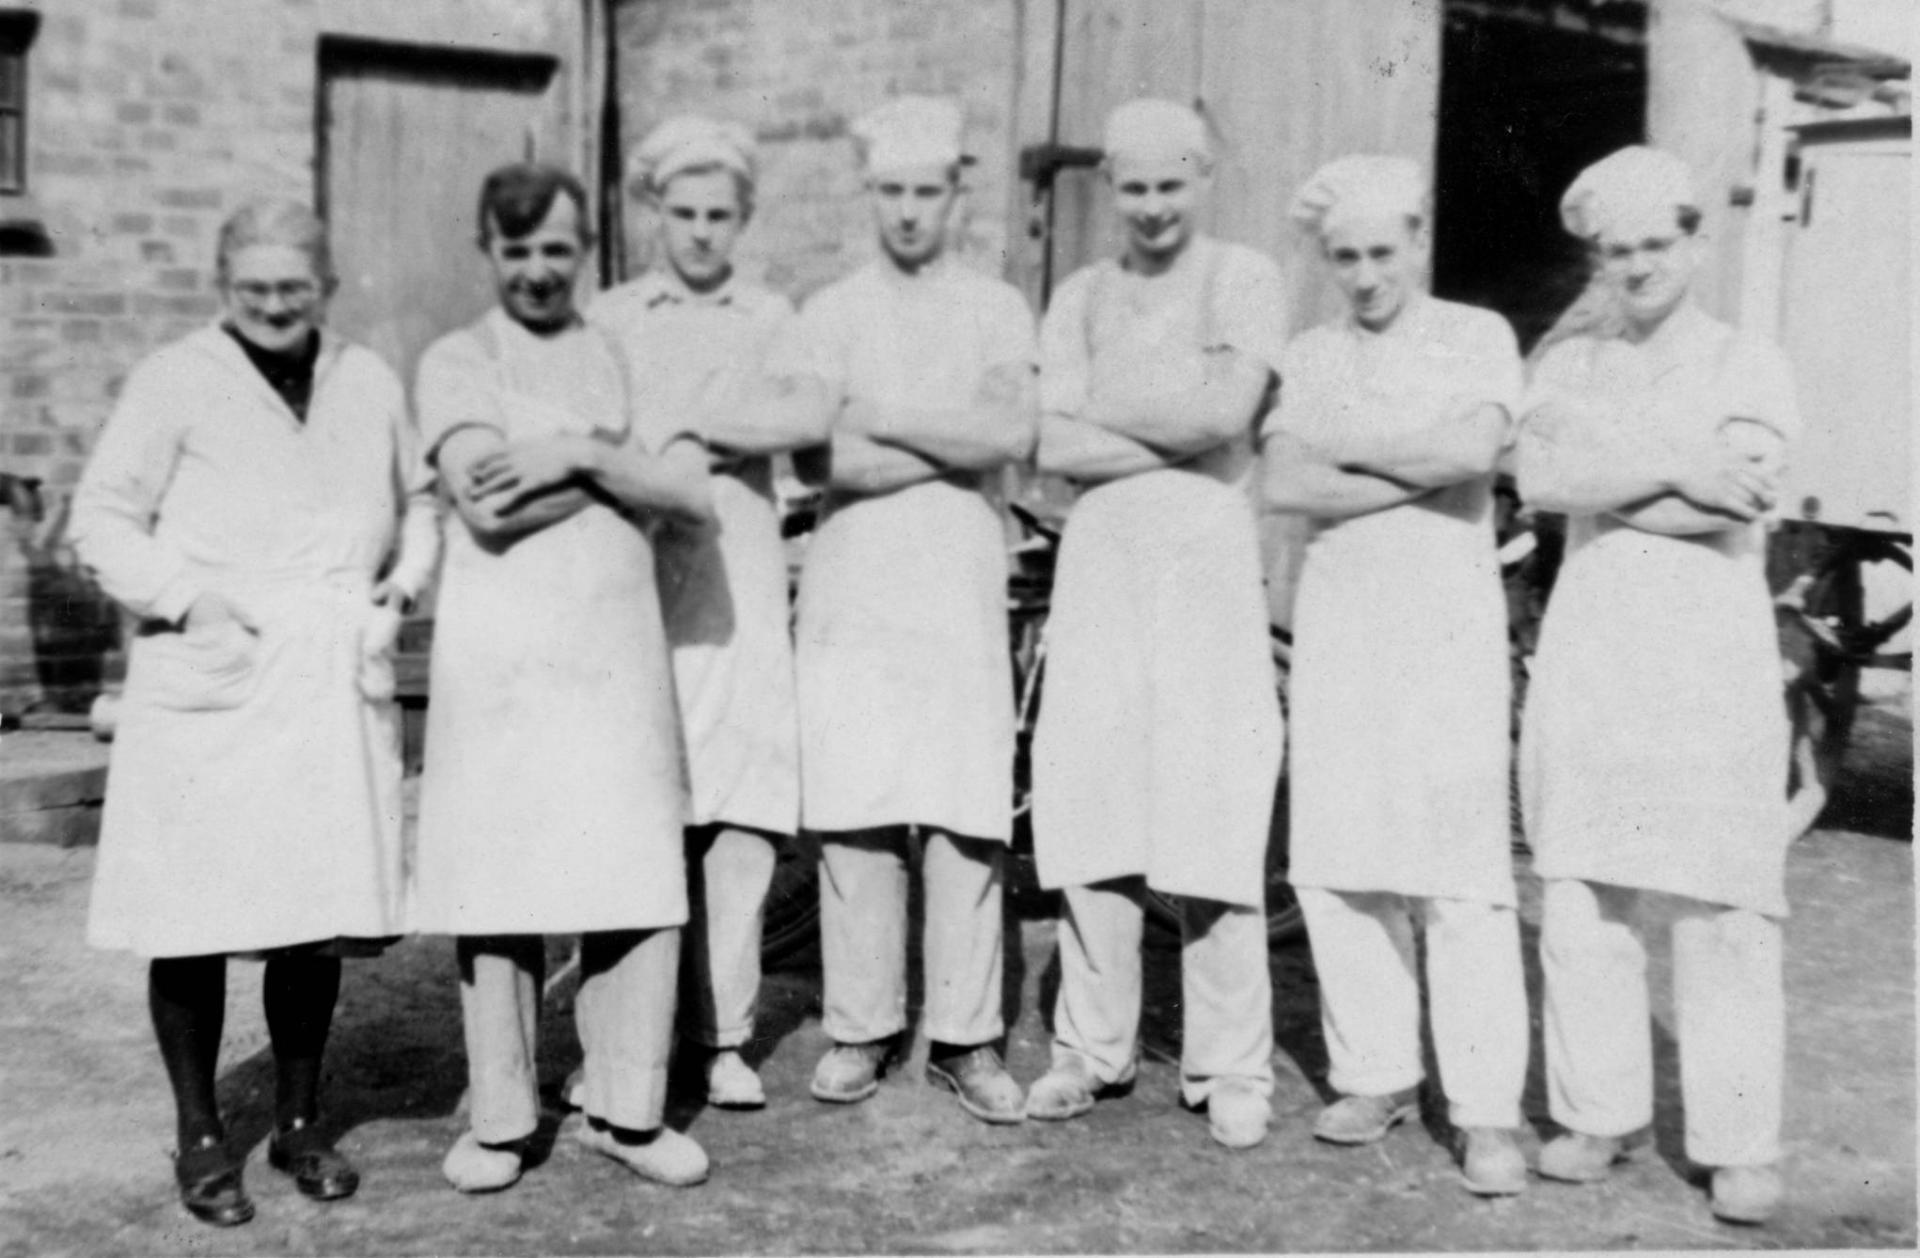 Belegschaft der Bäckerei Schmidt, etwa 1952. (Von links: Irma Schmidt, Heinrich Schmidt senior, unbekannt, unbekannt, unbekannt,  Horst Leverenz als Lehrling, Heinrich Schmidt junior).